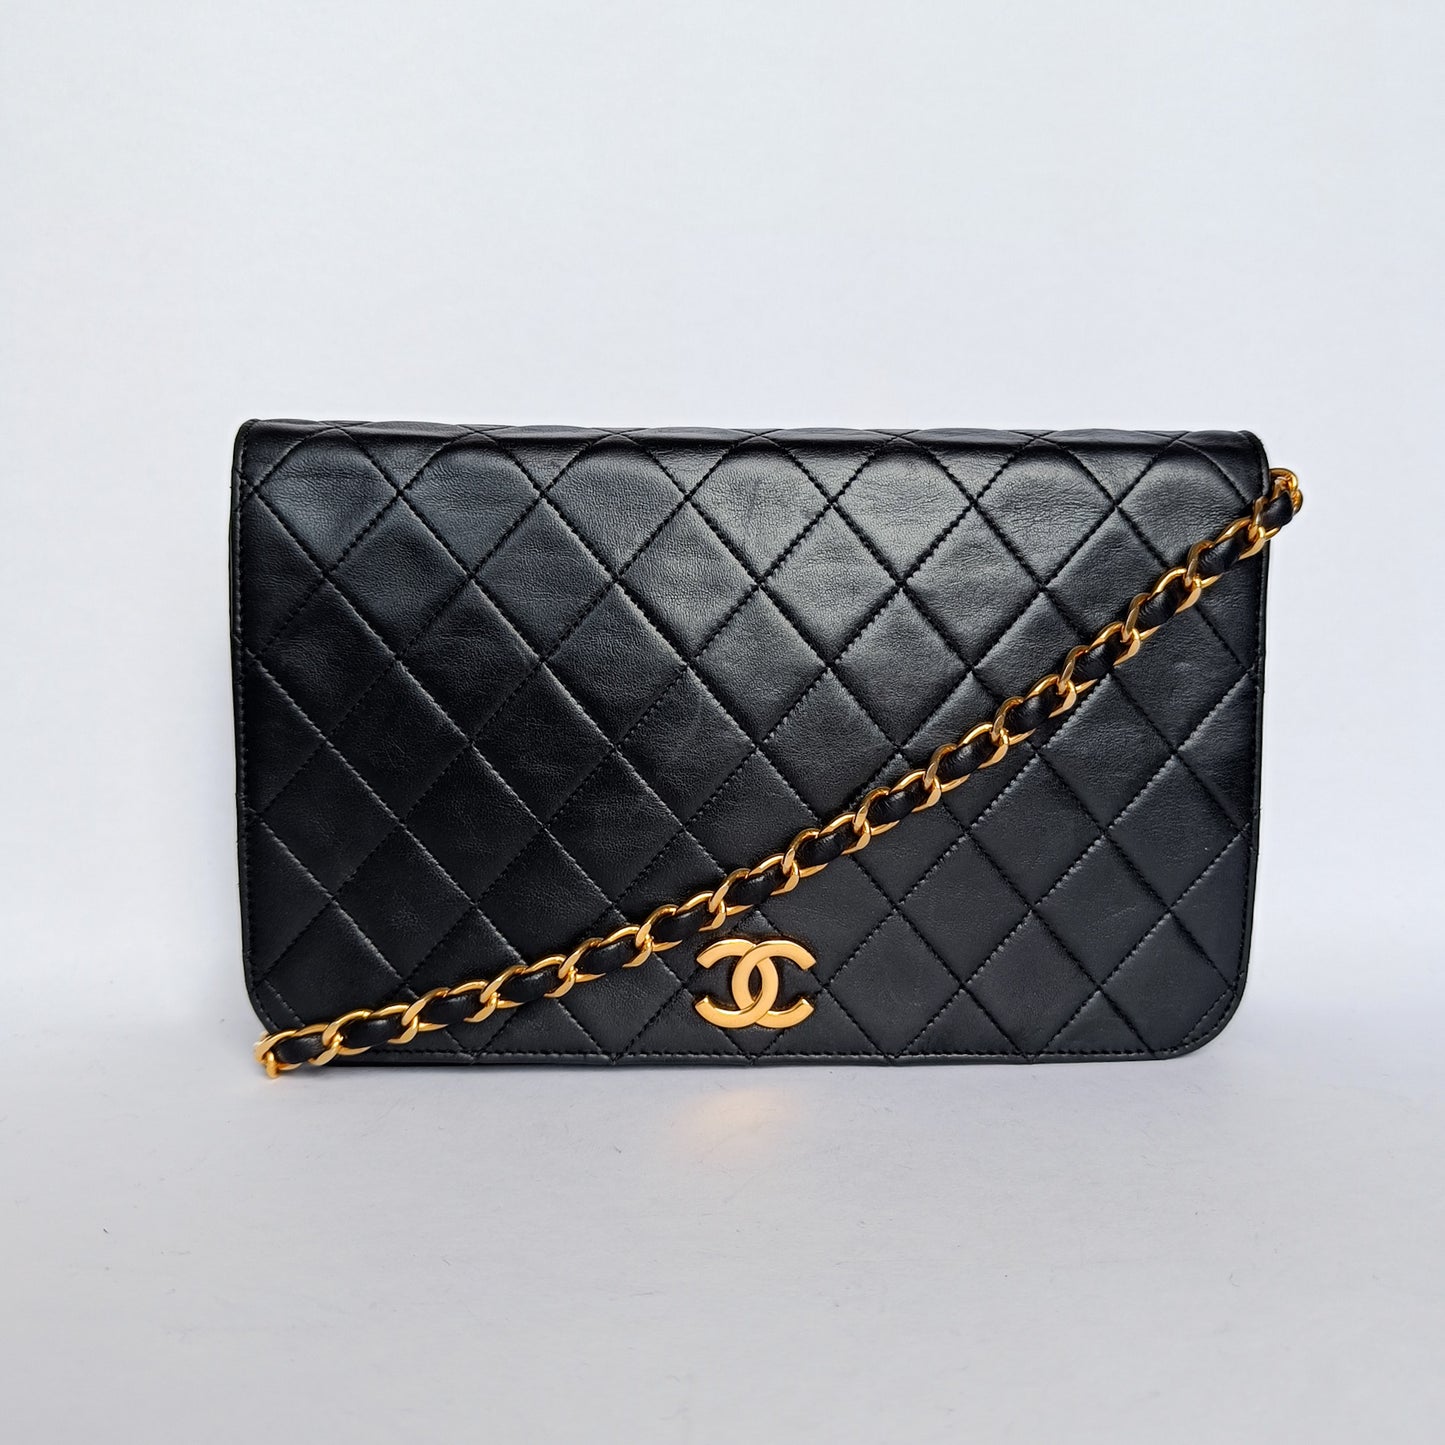 Chanel Einzelvoll Flap Bag Lammleder